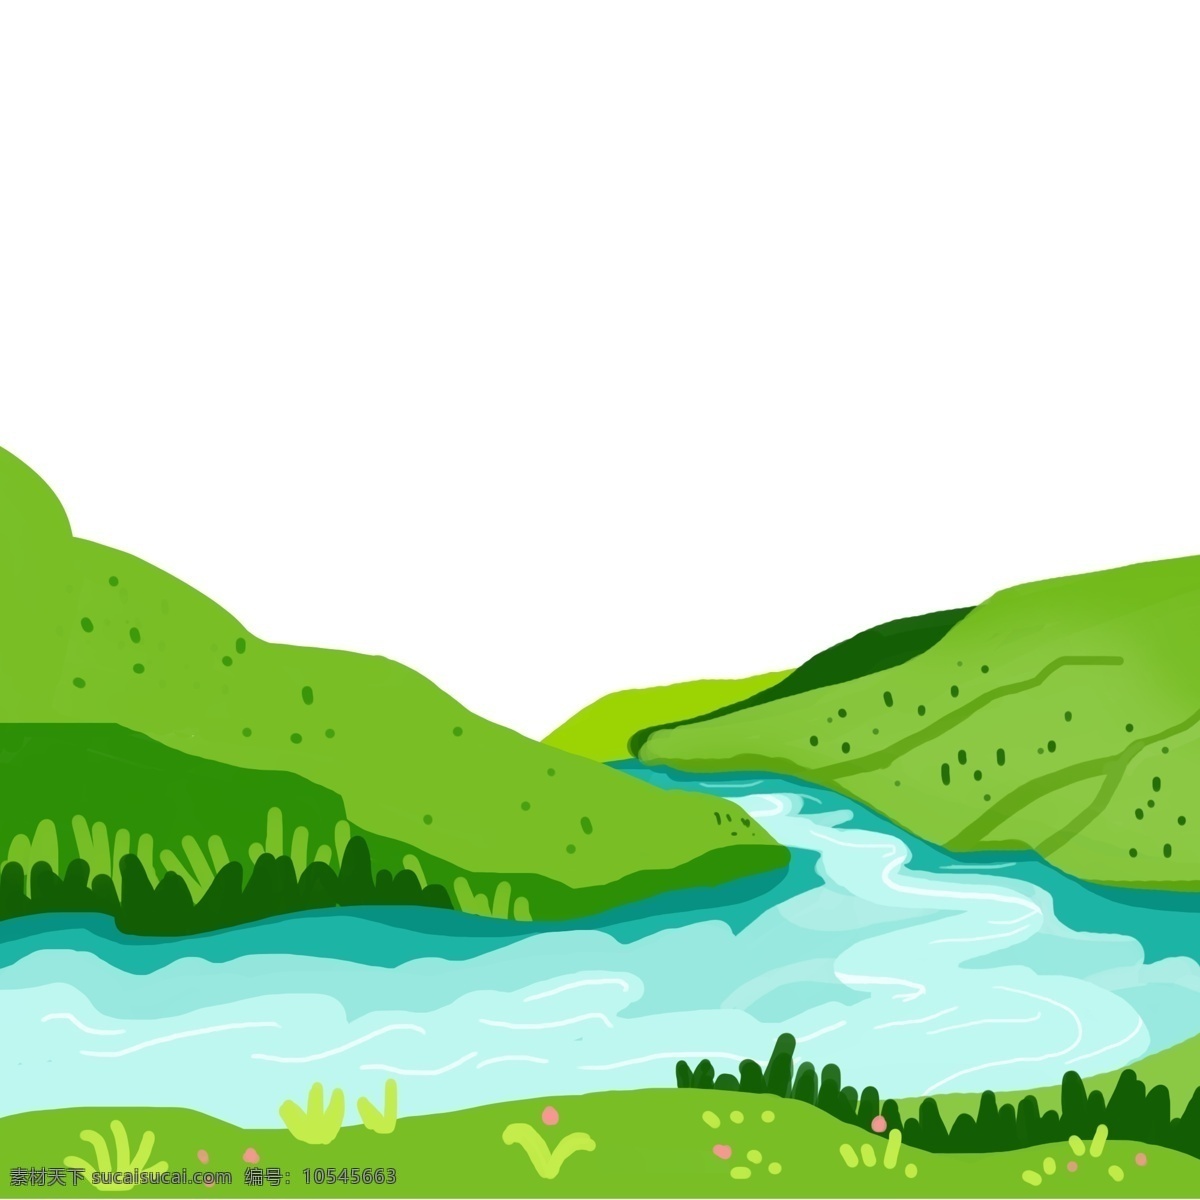 远郊 绿色 外出 游玩 绿色郊外 绿色环境 健康远足旅游 游山玩水 蓝色河流 青山绿水 清澈见底 绿树 青草 psd源文件